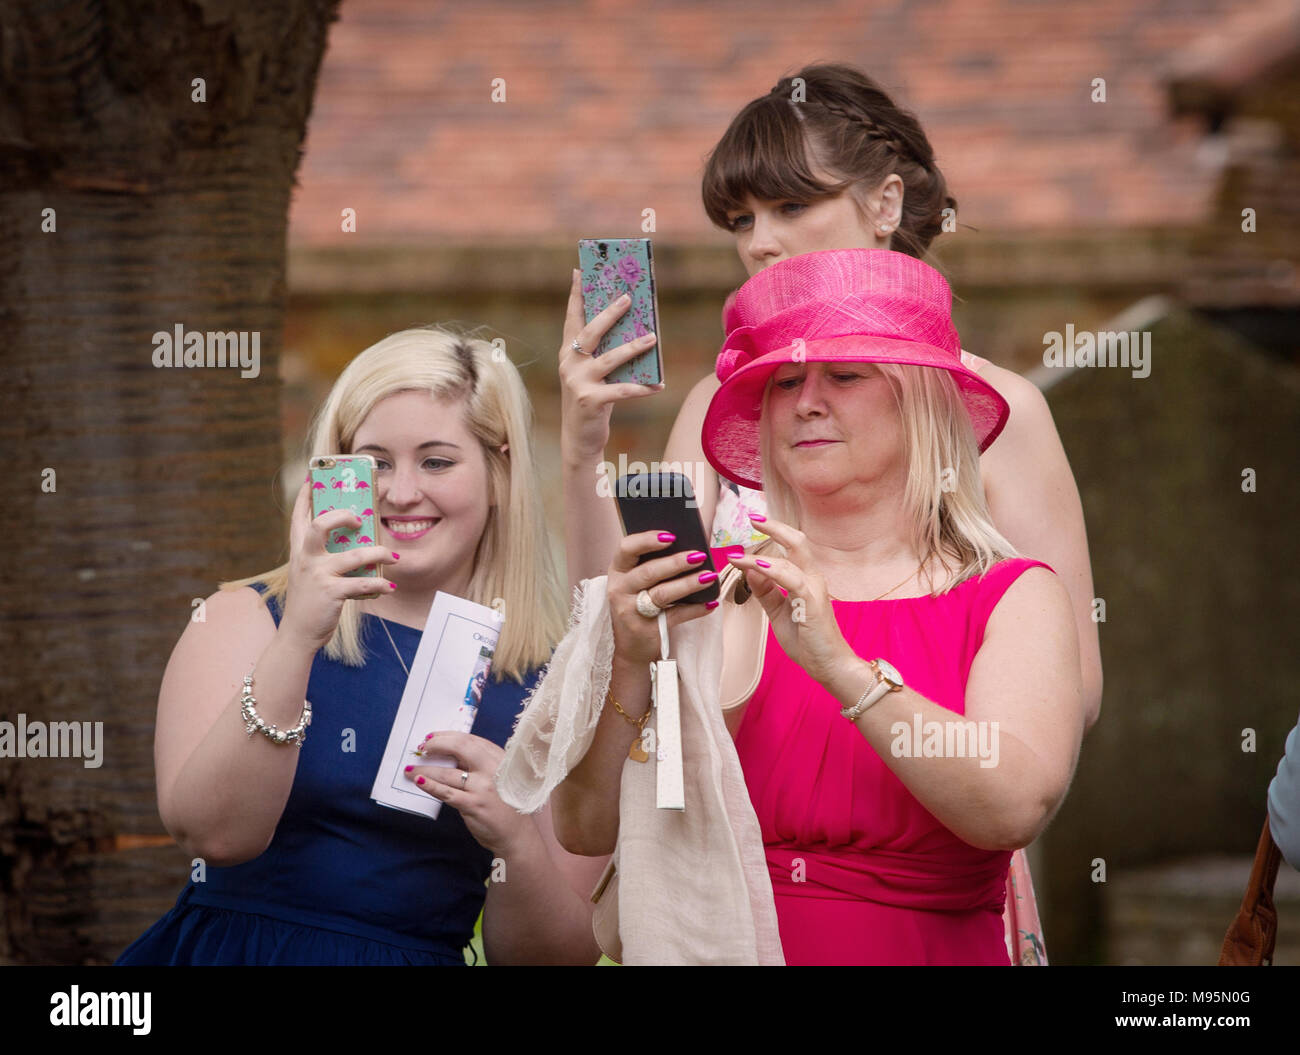 Los invitados a la boda femenina tomando fotografías en teléfonos móviles Foto de stock